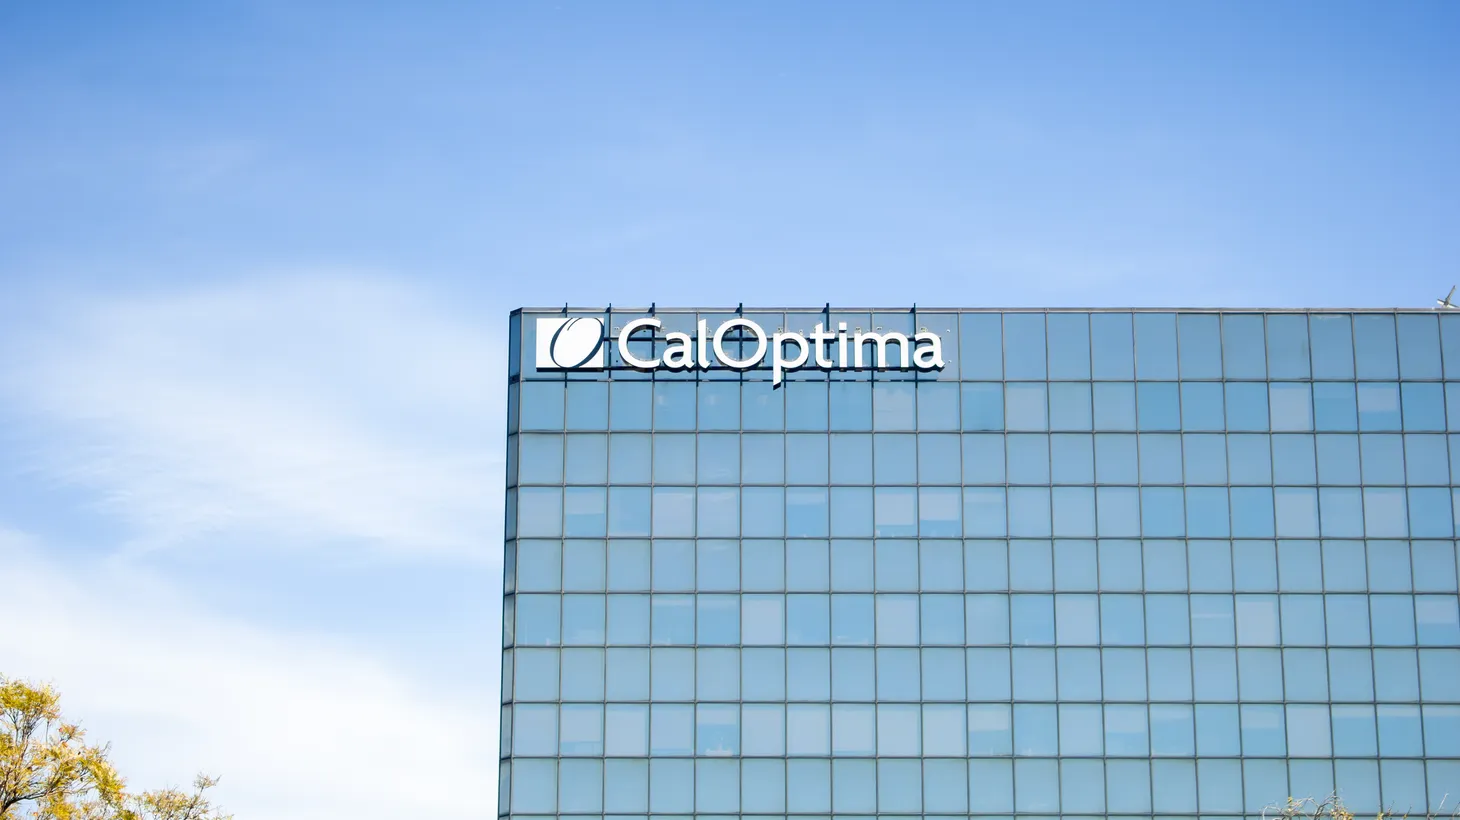 A CalOptima building is seen in Garden Grove, California.